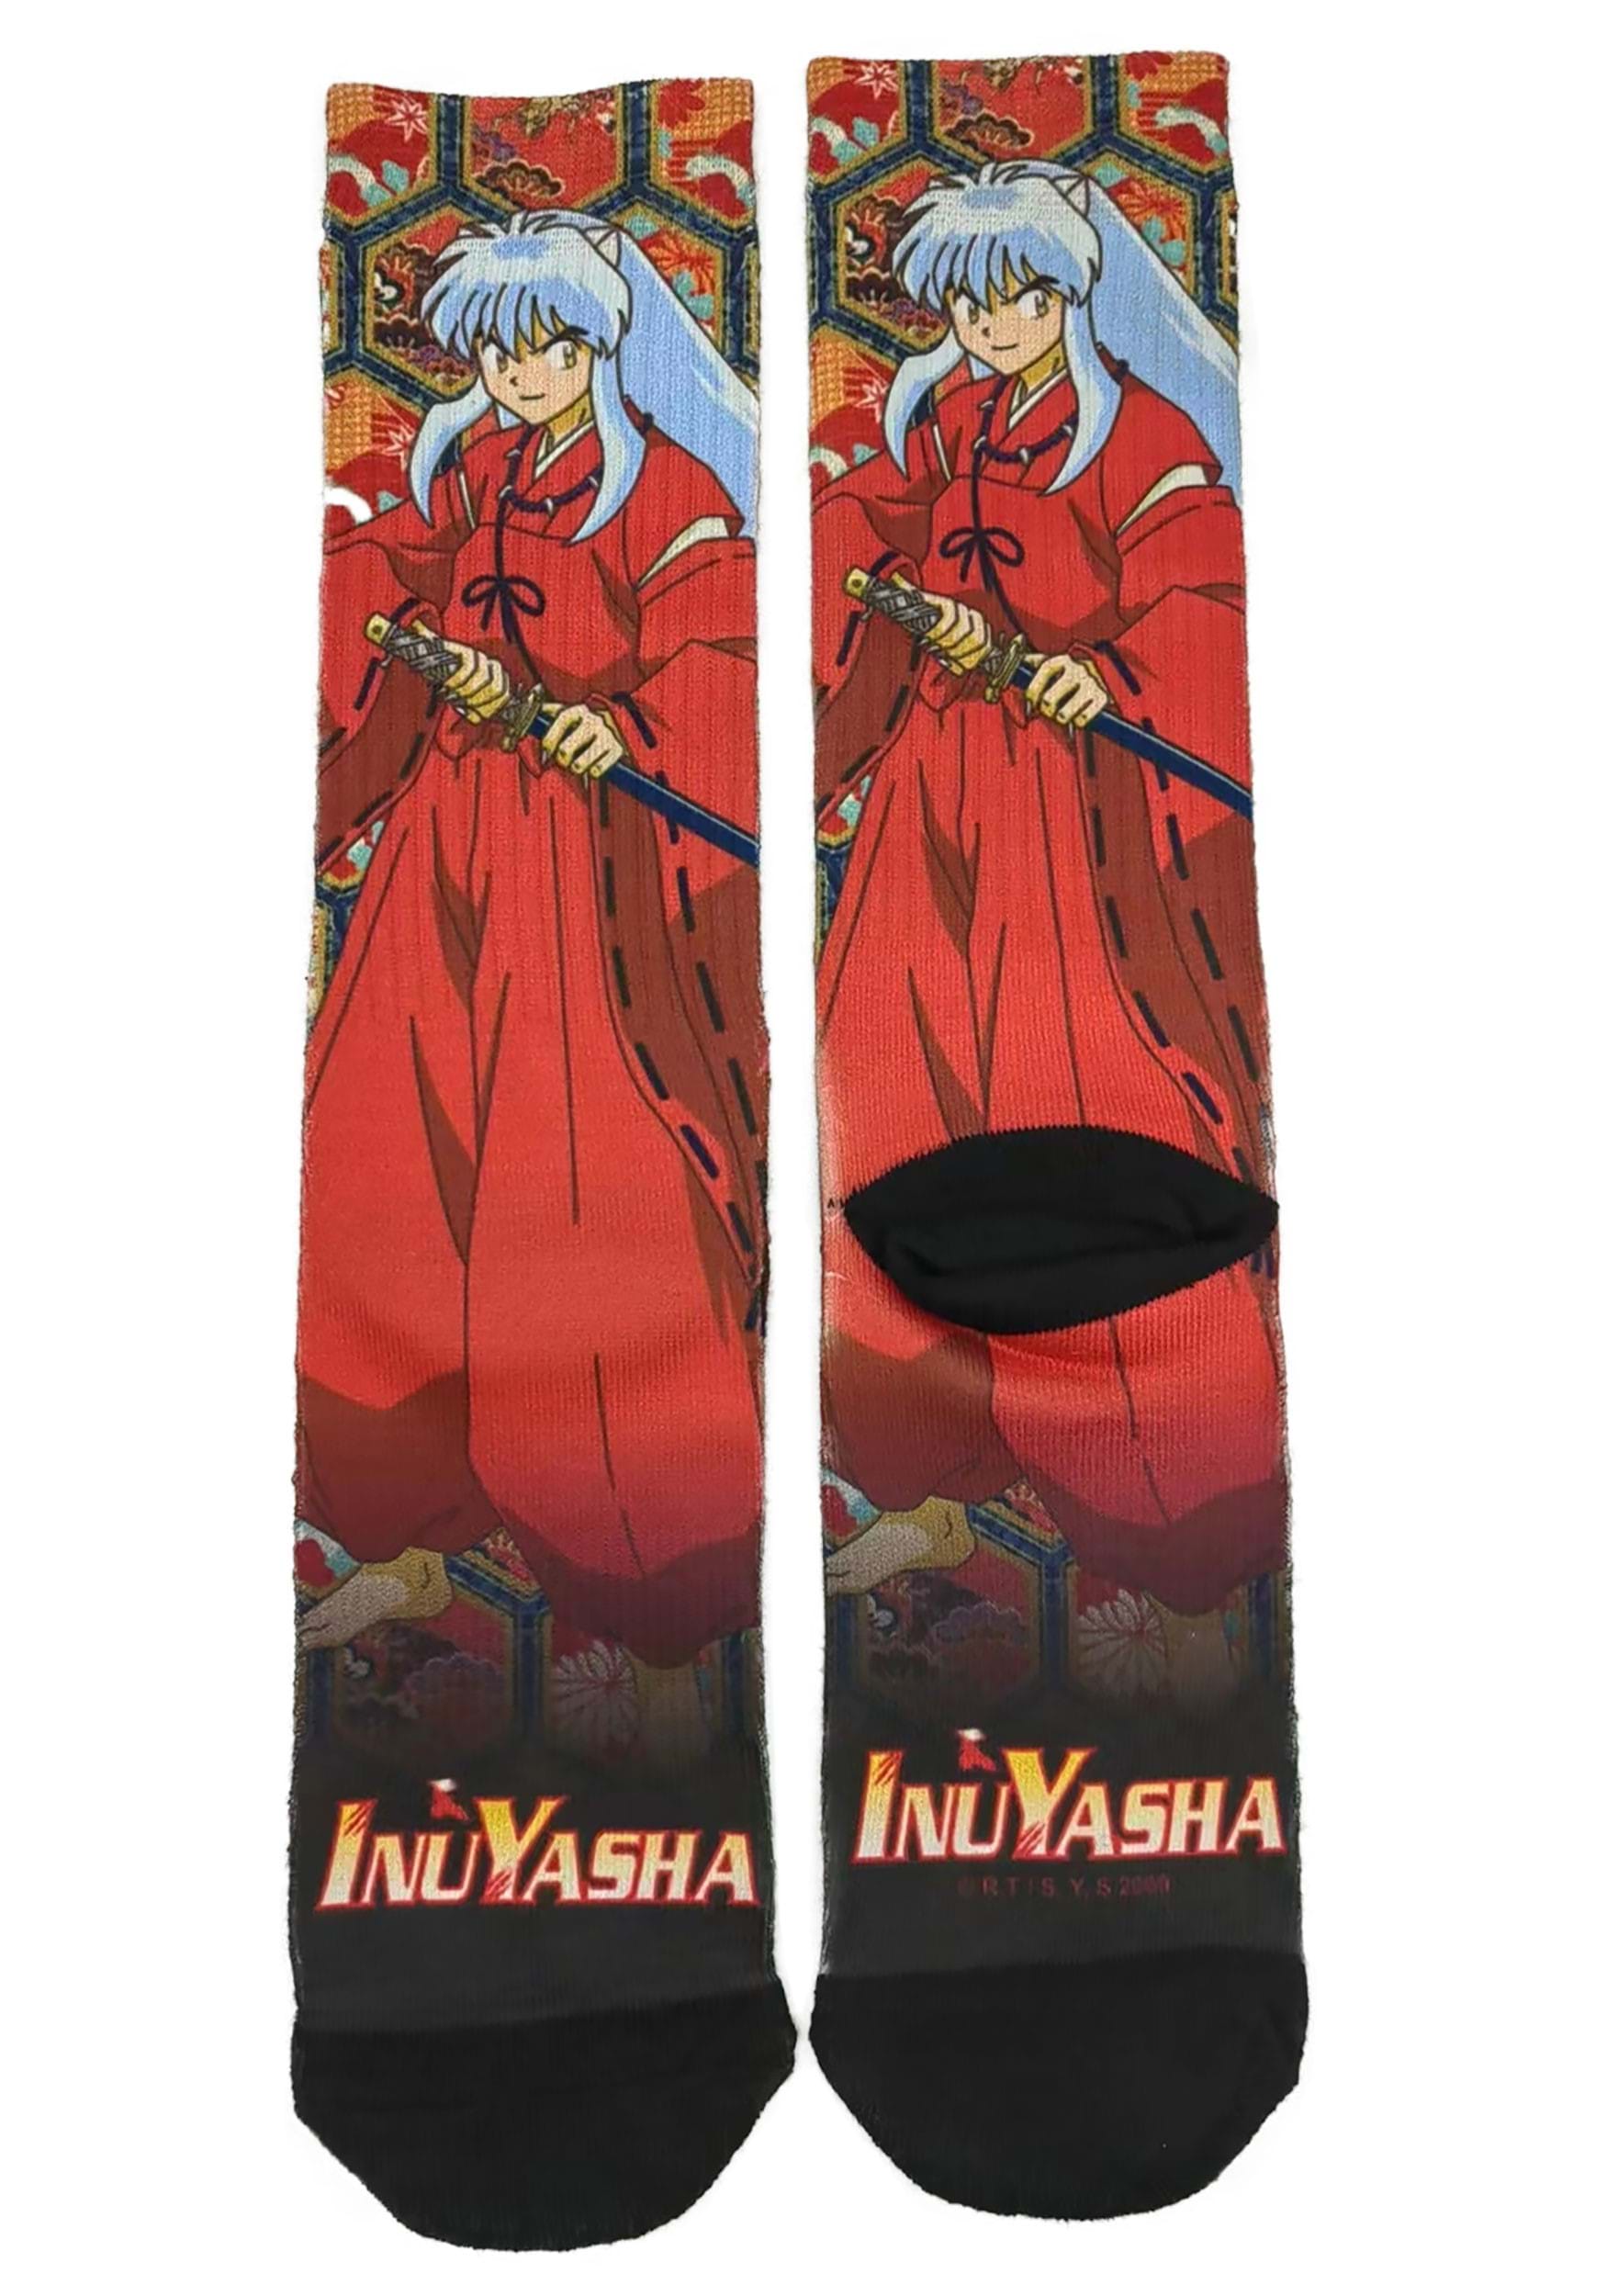 Inuyasha Sublimation Socks for Adults